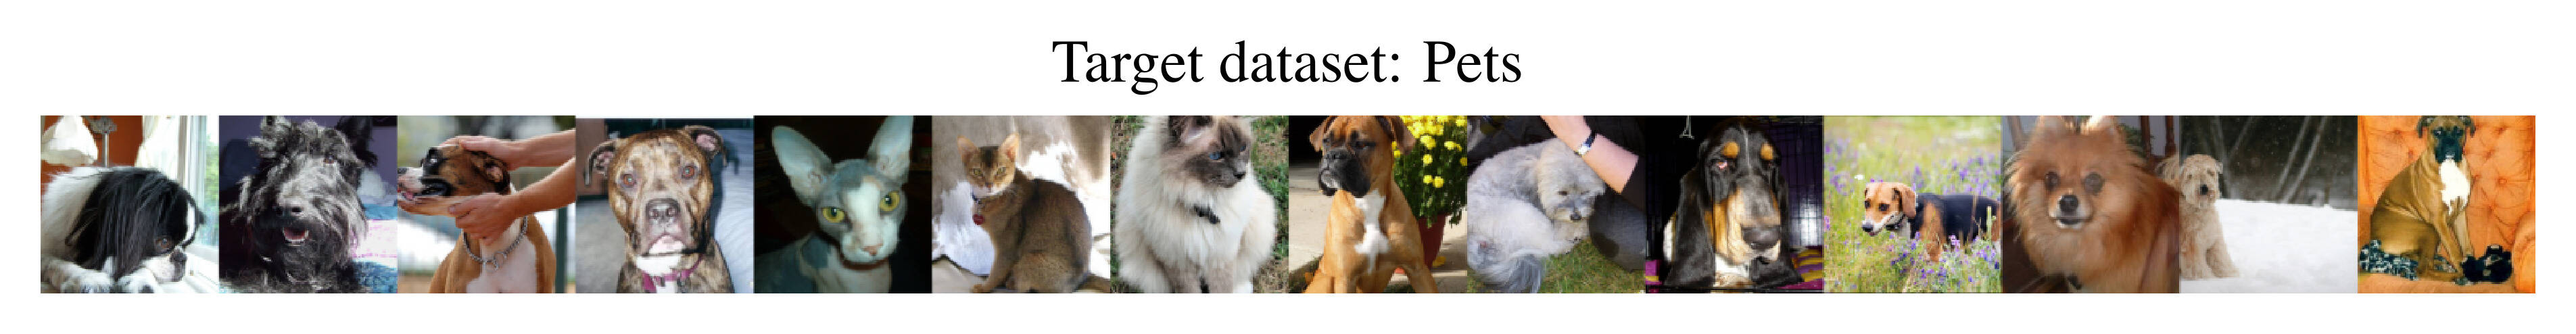 Pets target dataset.